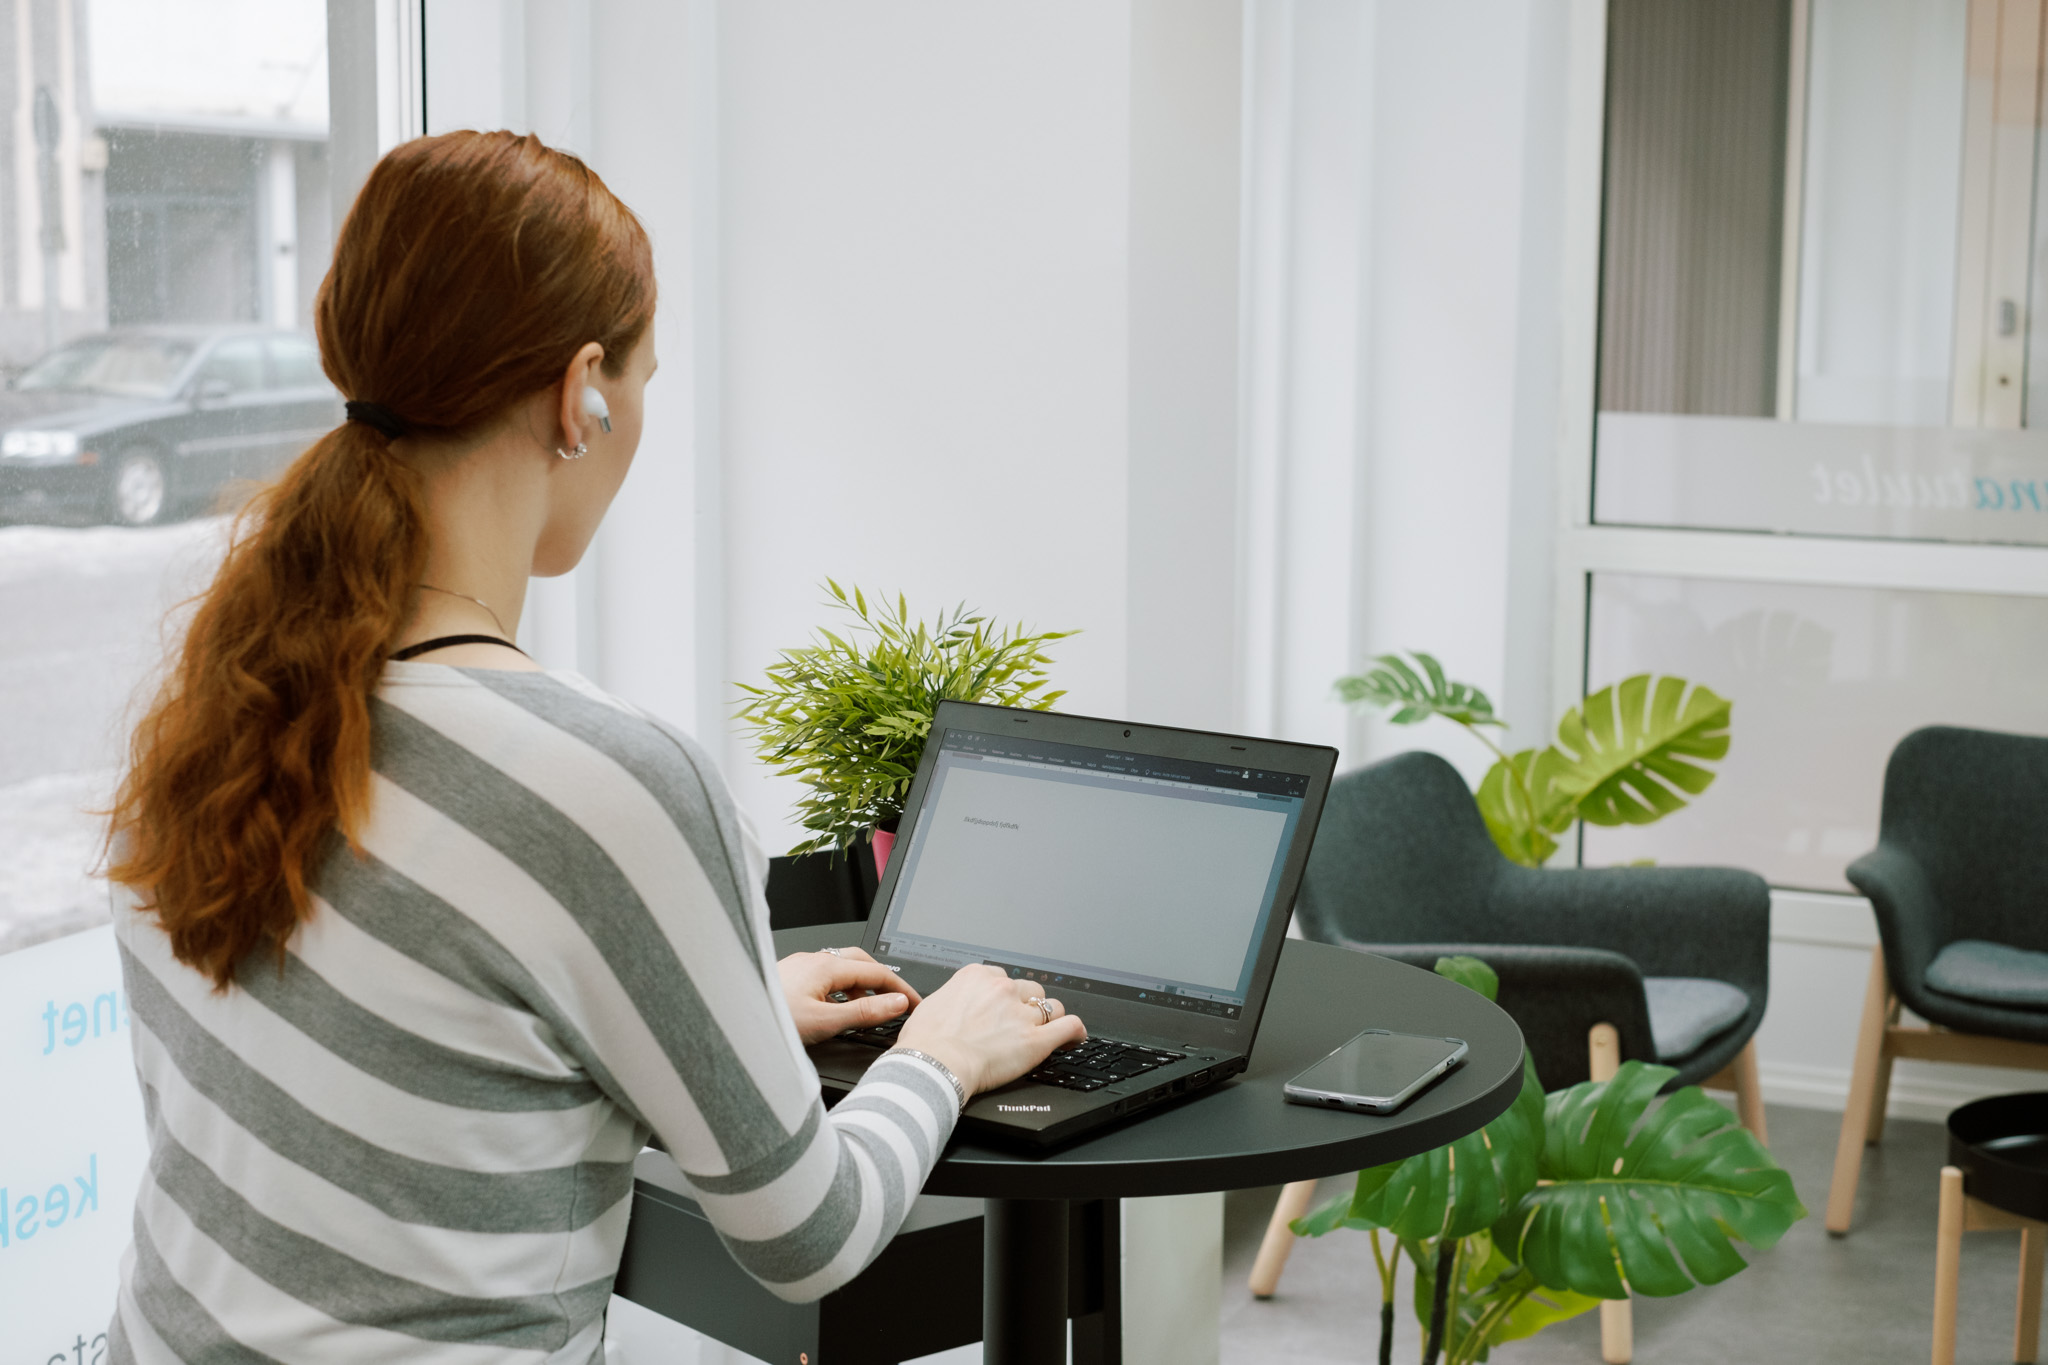 Nainen istuu pienen pyöreän pöydän ääressä ja kirjoittaa tietokoneella, hänellä on kuparinväriset pitkät hiukset ja kuva on otettu hänen selkänsä takaa.